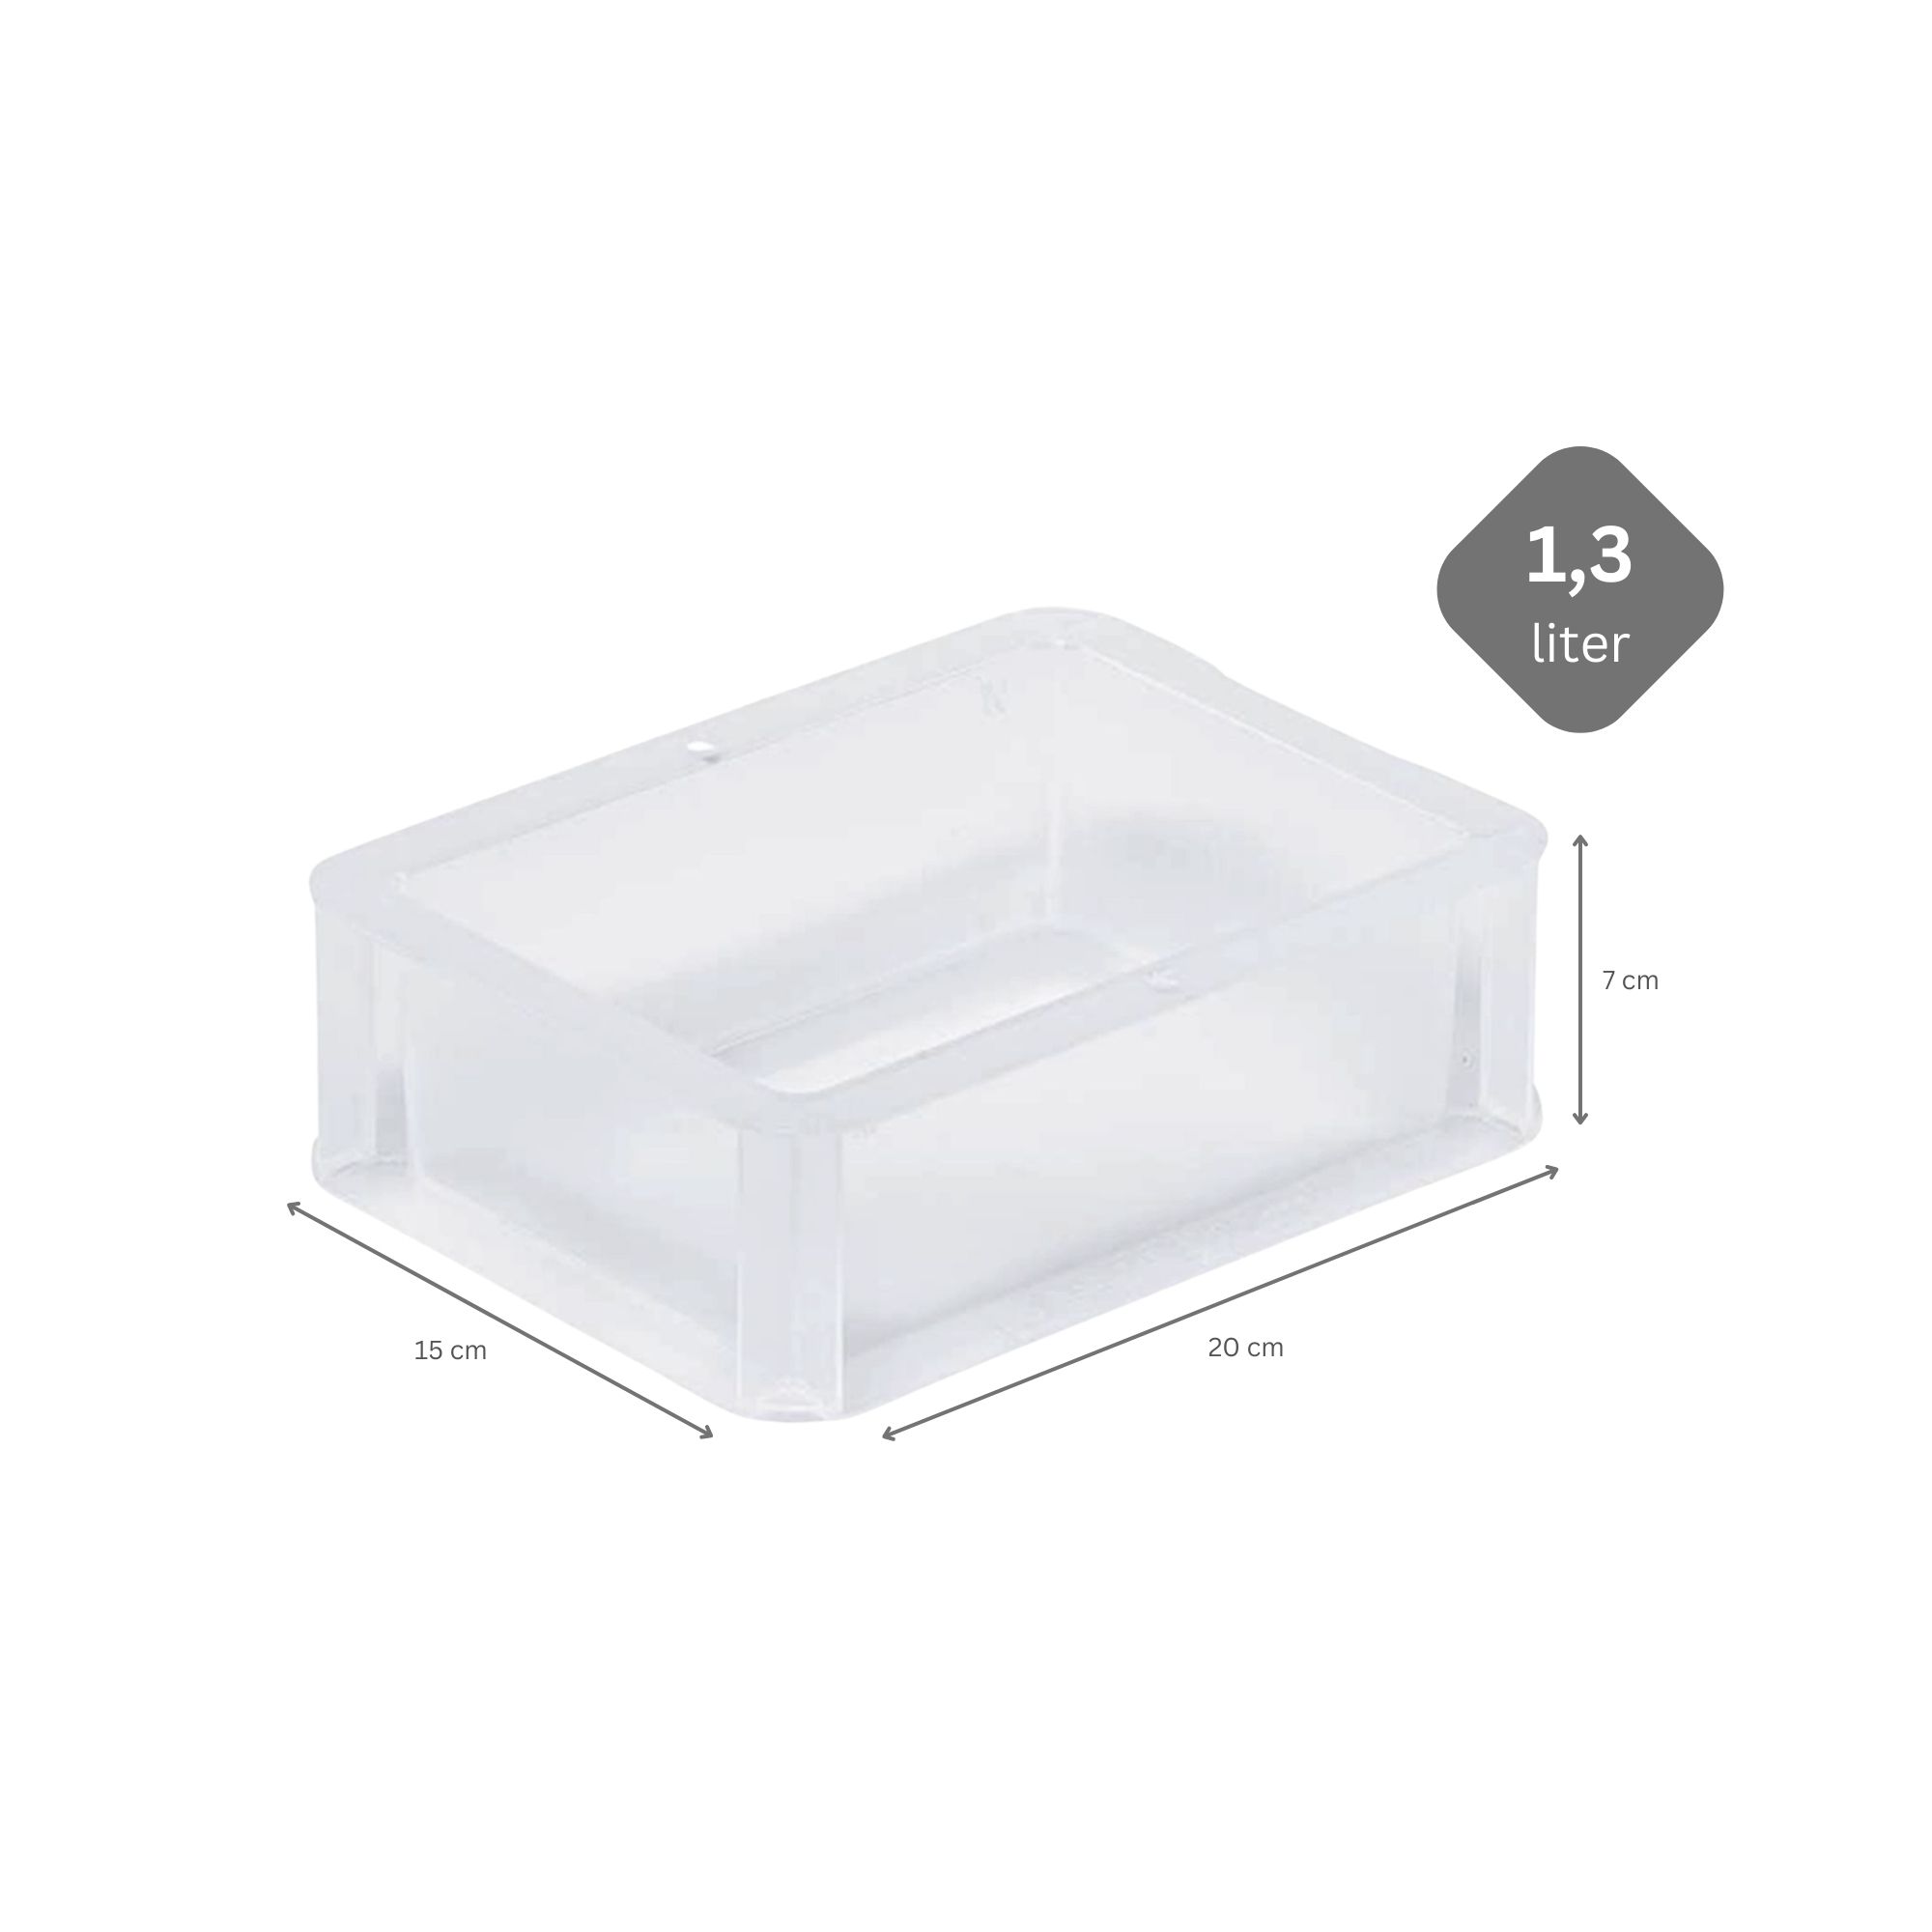 Transparenter Eurobehälter BasicLine mit geschlossenem Griff | HxBxT 7x15x20cm | 1,3 Liter | Eurobox, Transportbox, Transportbehälter, Stapelbehälter